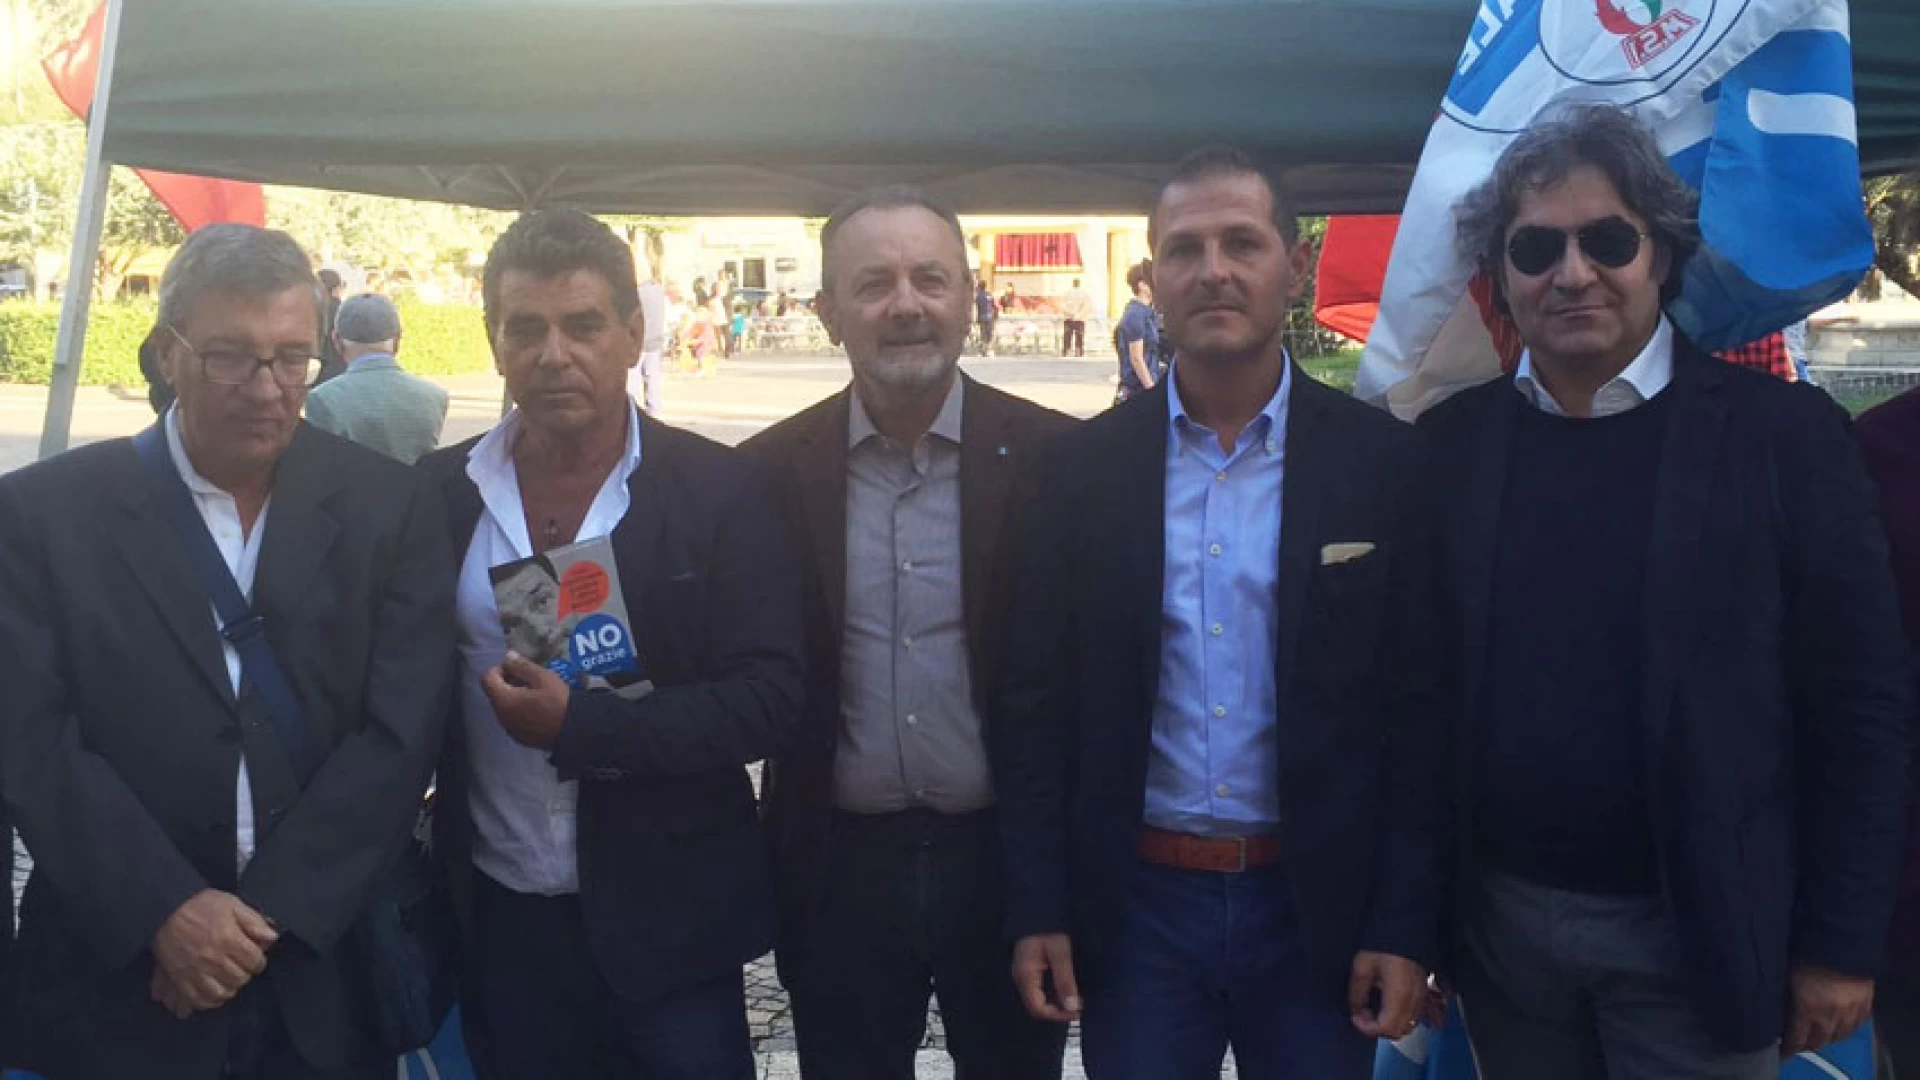 Campobasso: no al Referendum costituzionale. Successo per la raccolta firme di “Fratelli d’Italia”.